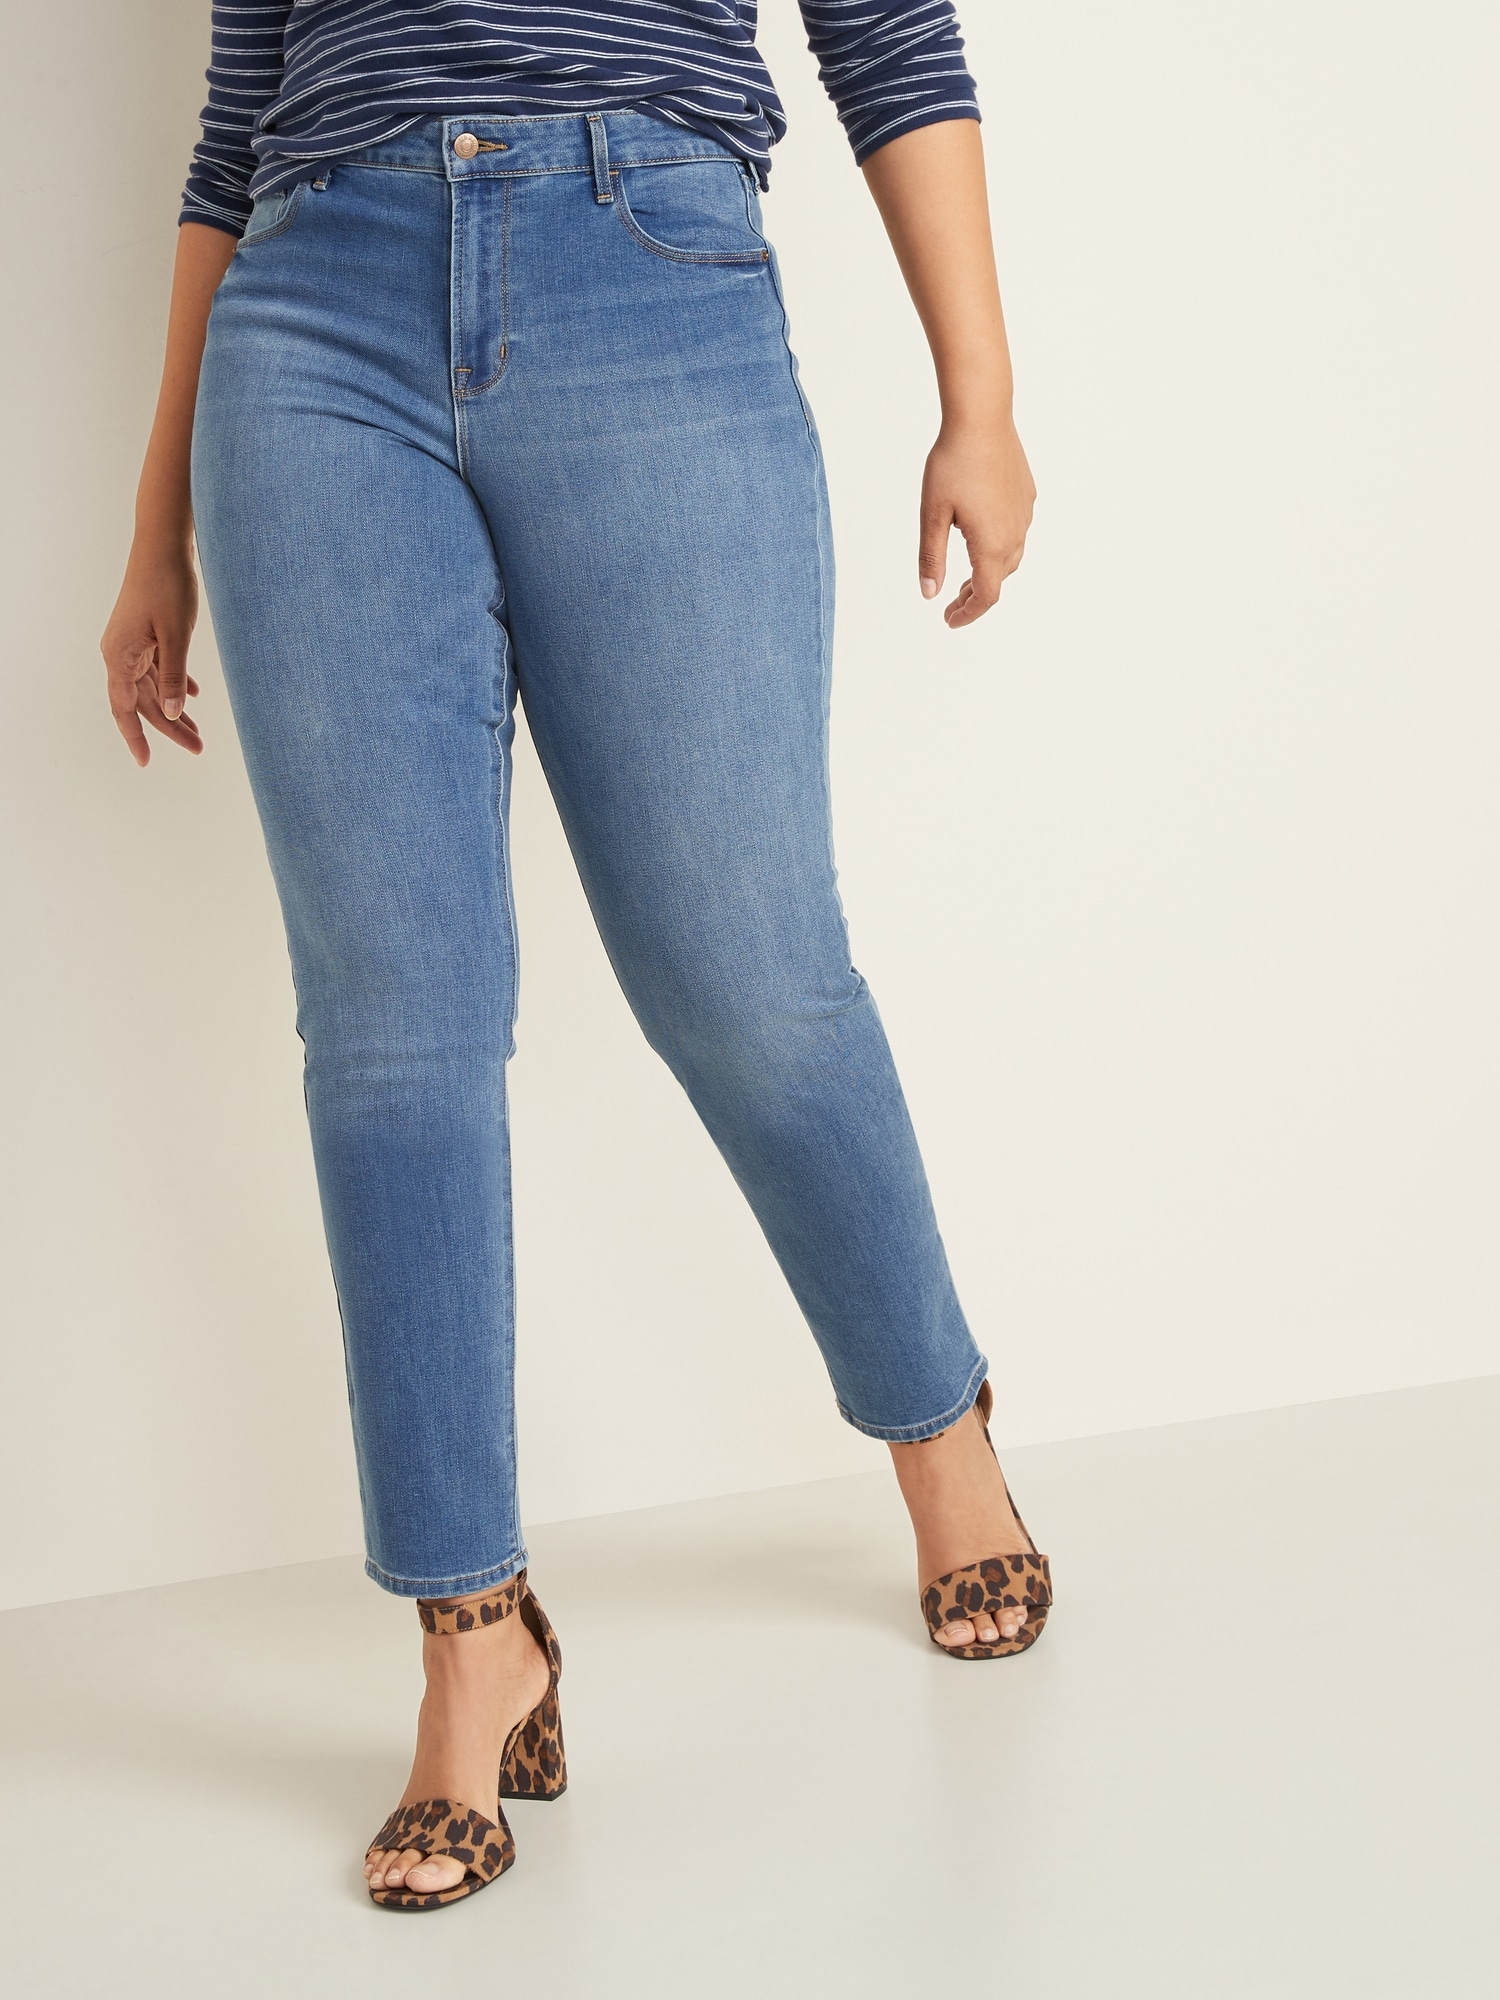 Womens Slim Fit Jean Skinny Denim Mid Waist Jeans Size 6 8 10 12 14 New